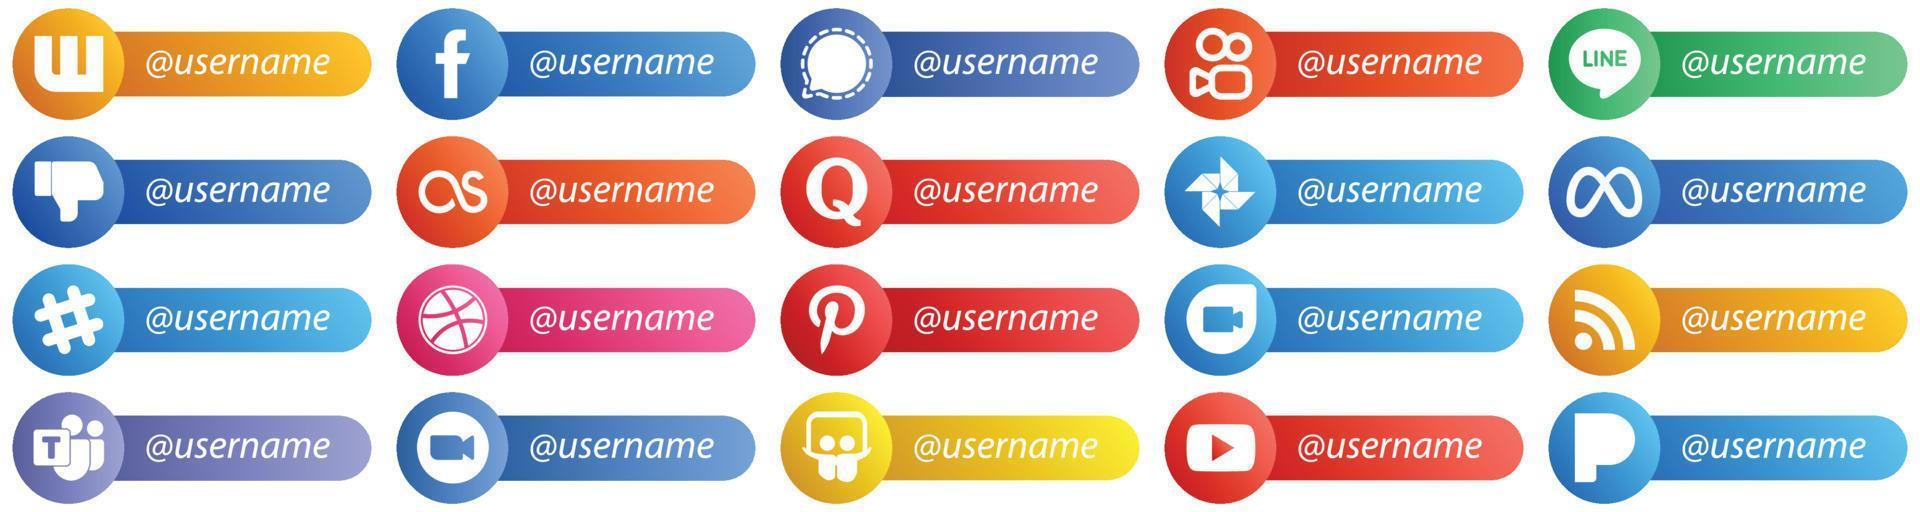 20 icônes de style carte pour les réseaux sociaux populaires avec un nom d'utilisateur tel que spotify. méta. la ligne. icônes google photo et quora. haute définition et polyvalent vecteur